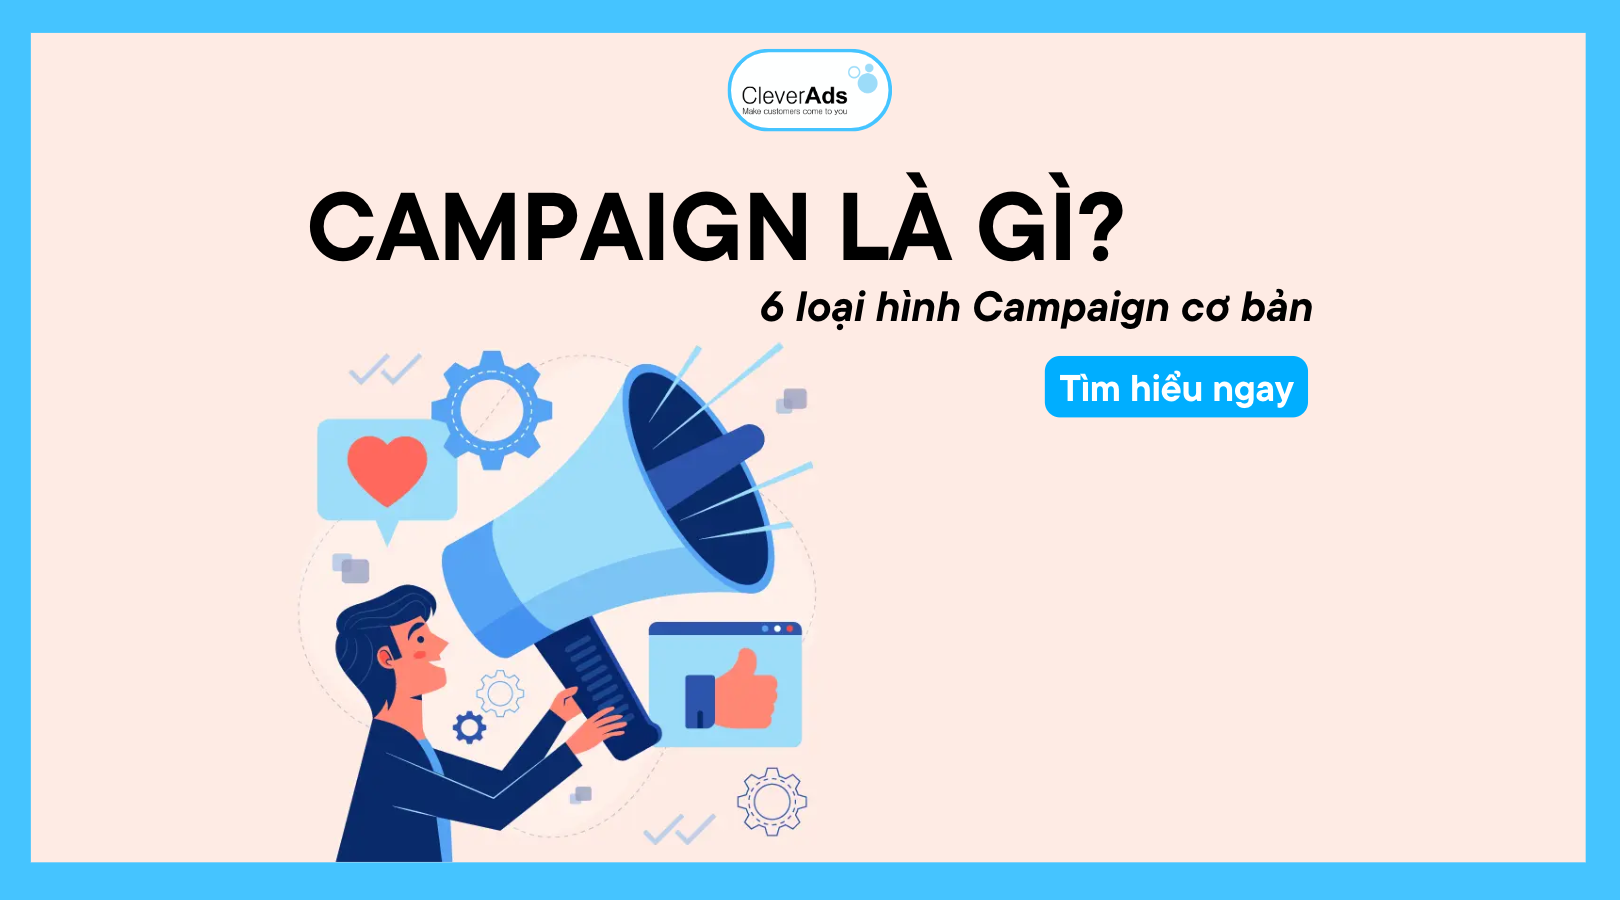 Campaign là gì? 6 loại hình Campaign cơ bản